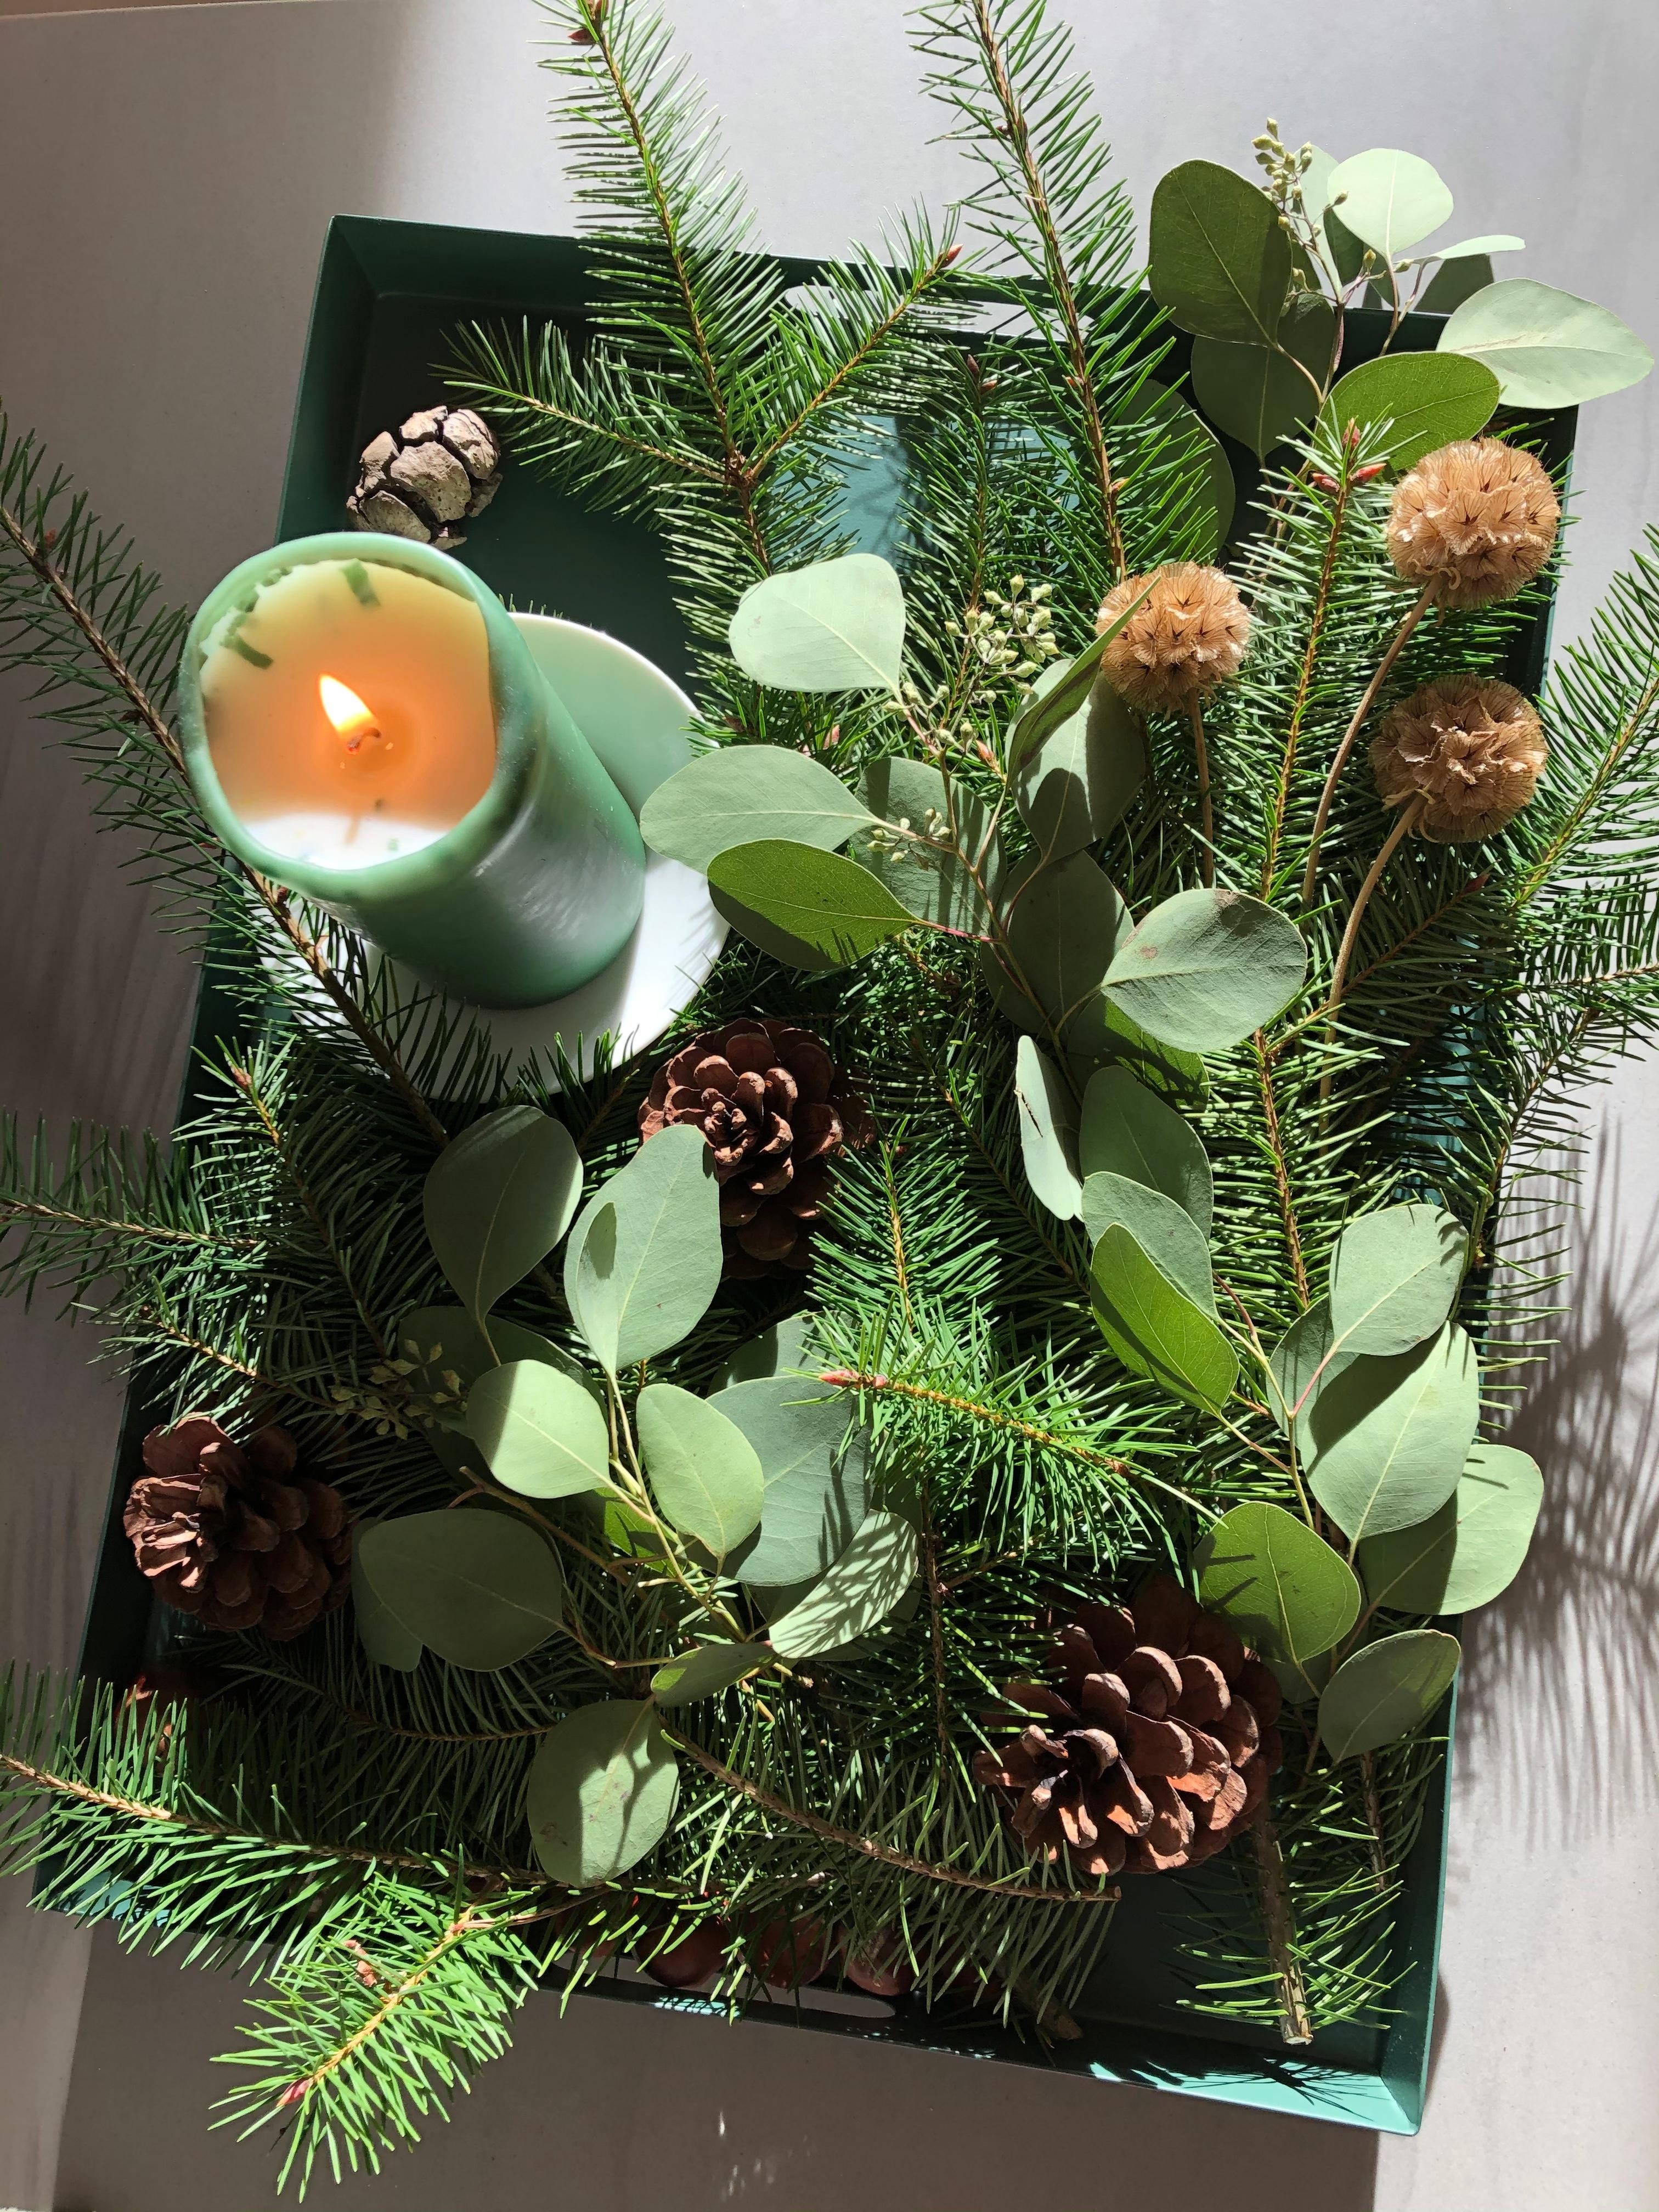 Langsam wird es vorweihnachtlich bei uns 🌲 #advent #tischdeko #diy #vorweihnachtszeit #eukalyptus